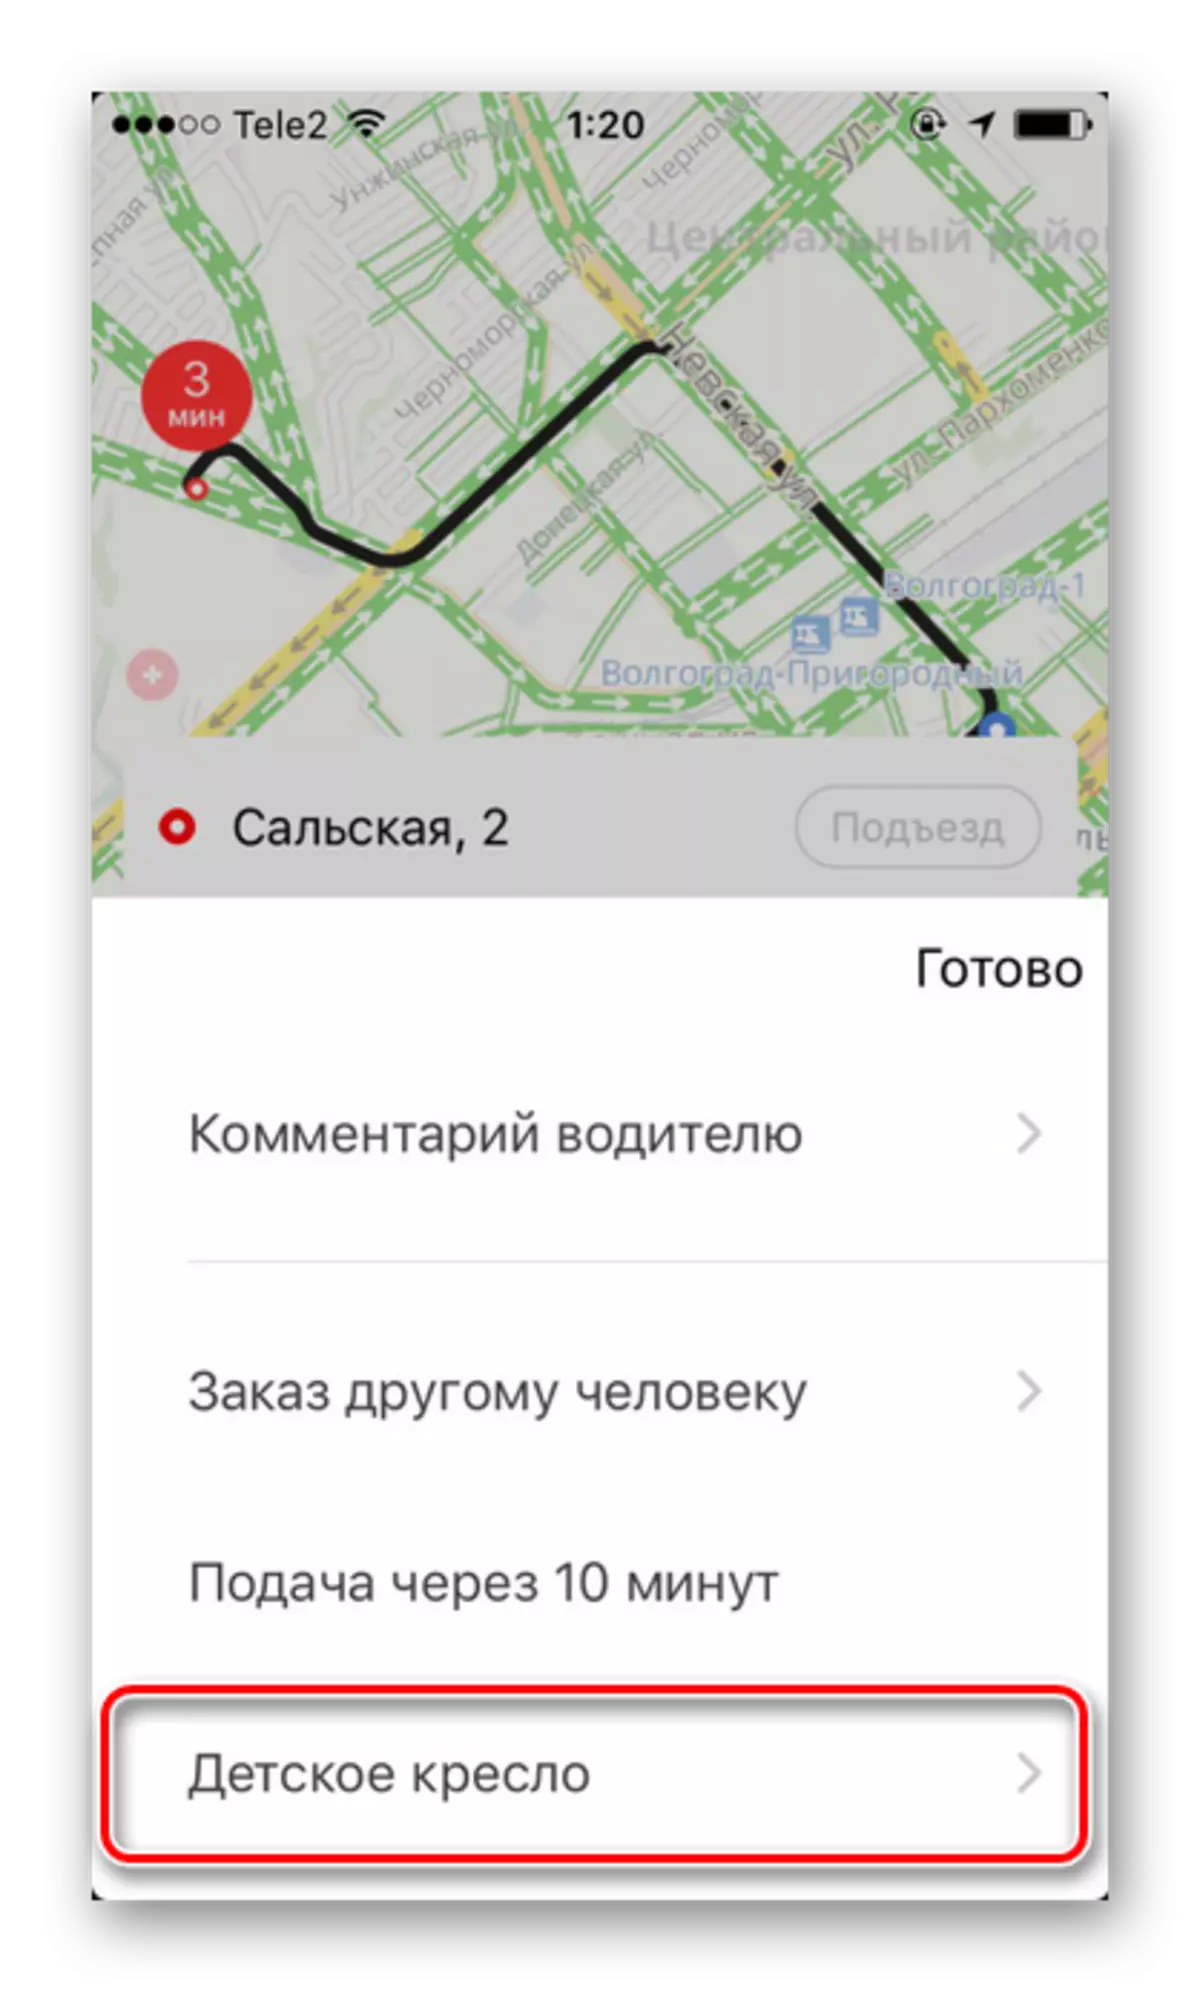 iPhone တွင် Yandex.taxi တွင်ကလေးသူငယ်ကုလားထိုင်များပြဌာန်းချက်အတွက်အပိုဆောင်းဝန်ဆောင်မှု